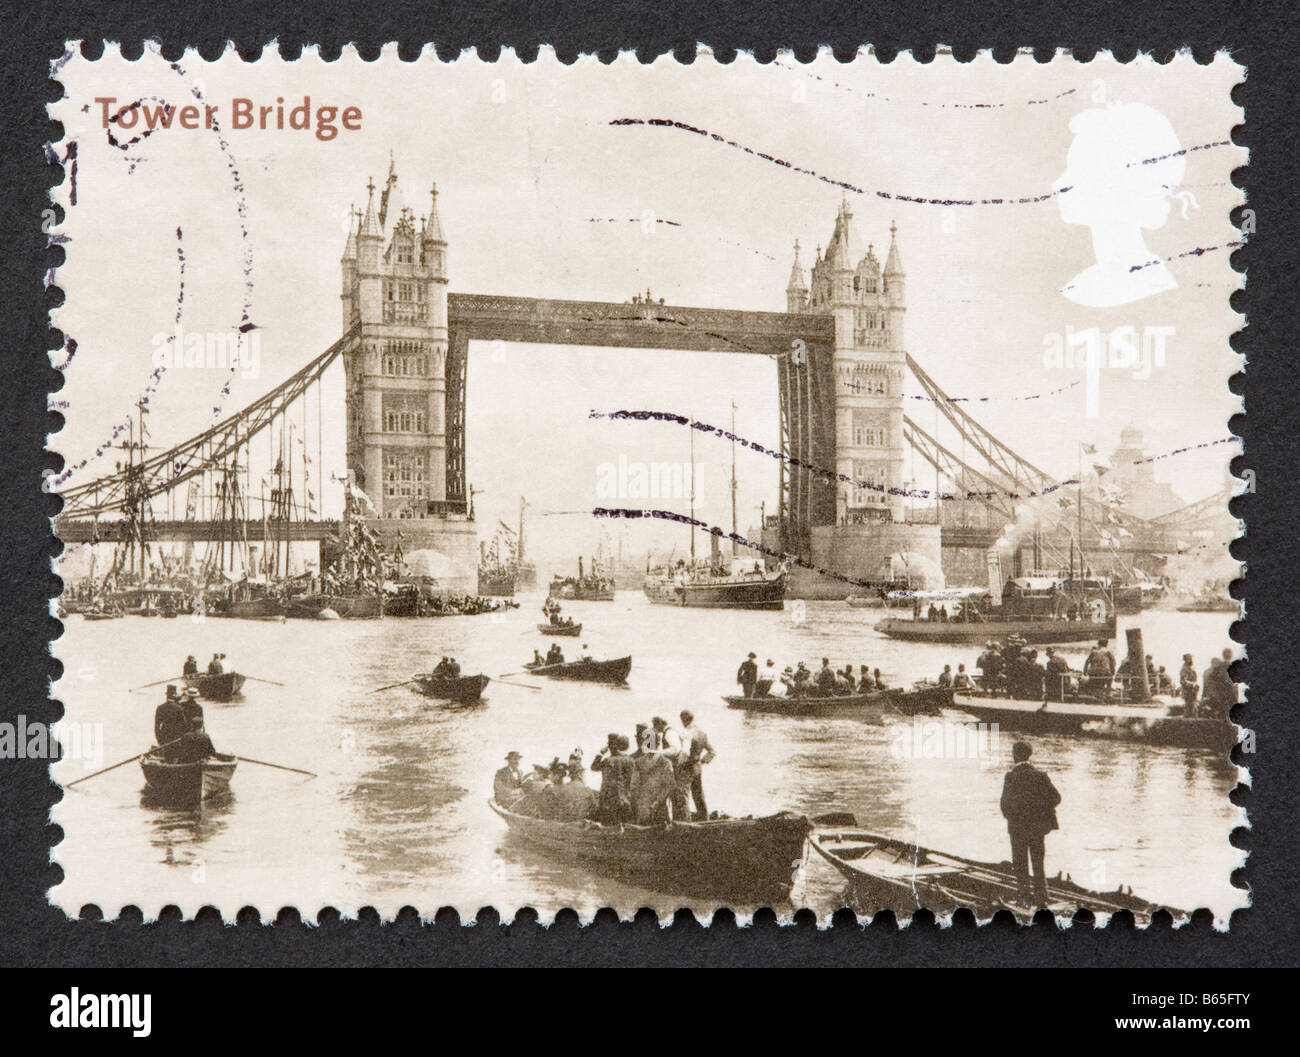 Britische Briefmarke Stockfoto